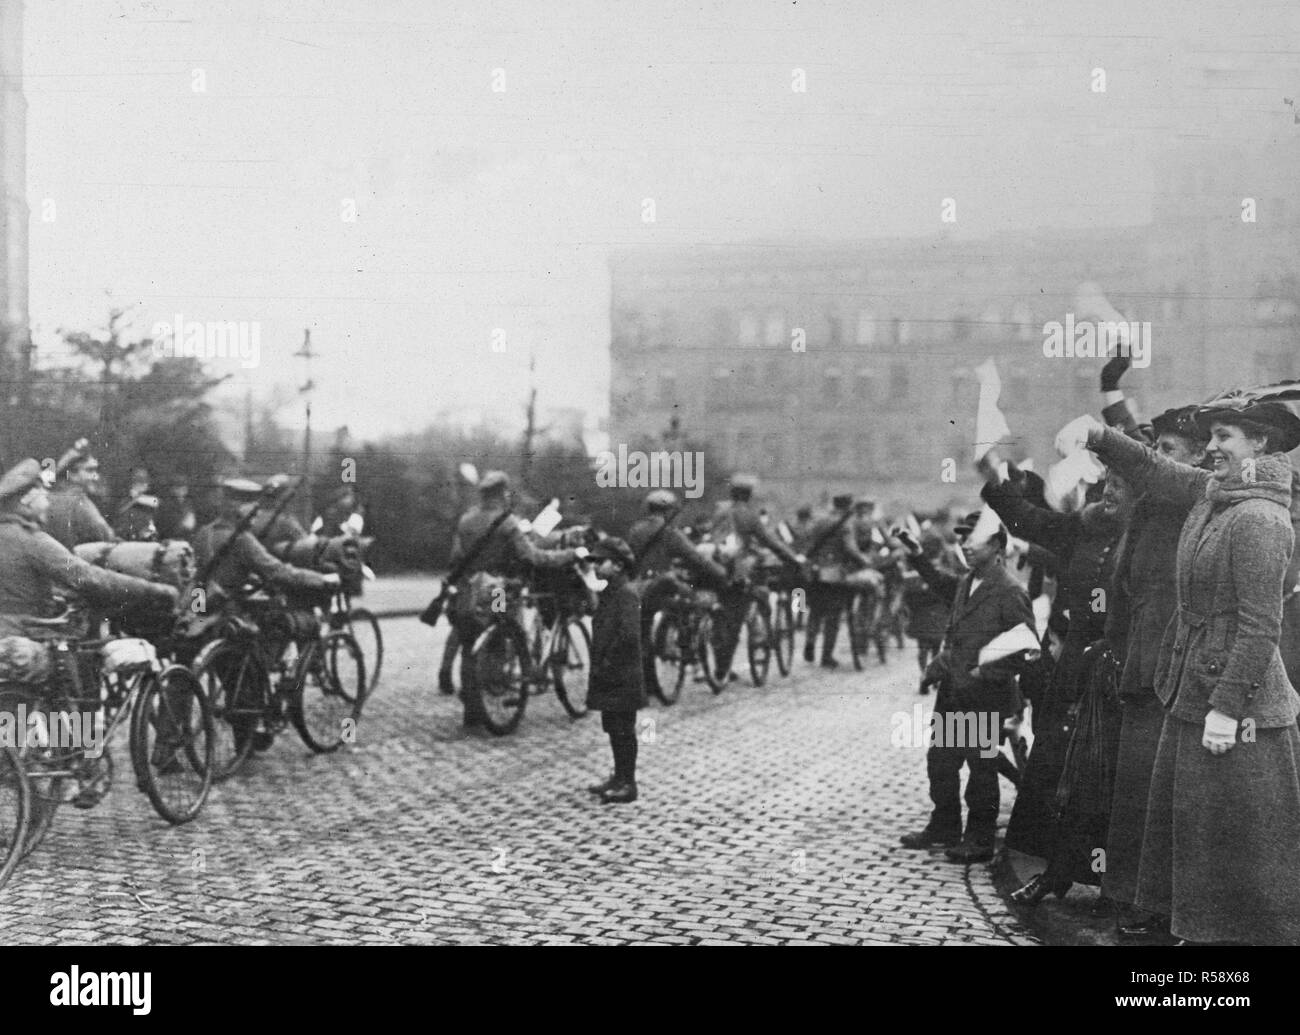 Deutsche Revolution - Regierung Truppen mobilisieren Ebert in Deutschland zu unterstützen. Loslösung der Deutschen Fahrrad corps marschieren durch die Straßen von Köln nach der Mobilisierung der Regierung Ebert zu erleichtern kann. 1918-1919 Stockfoto